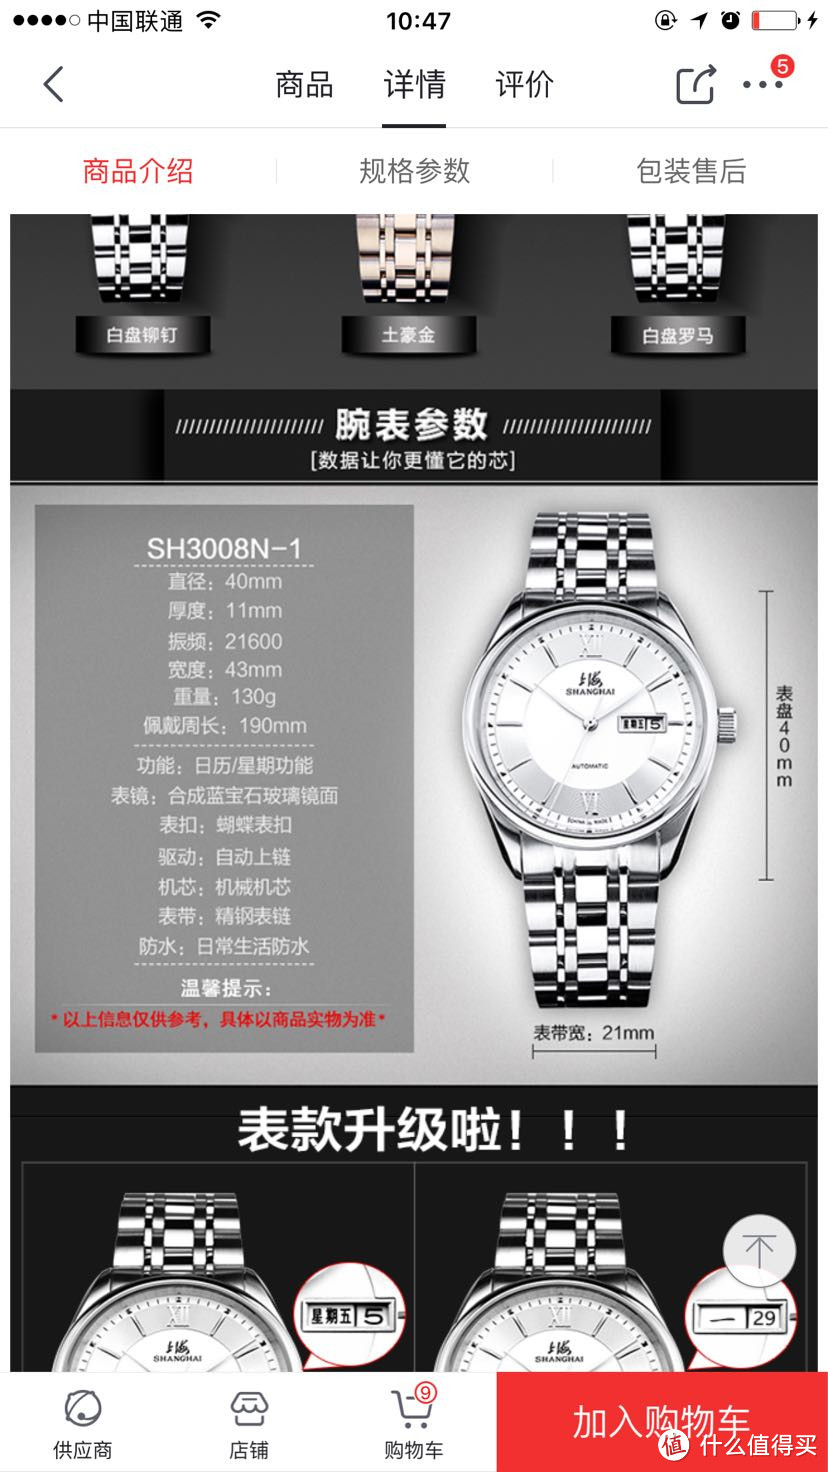 #原创新人#剁主计划-沈阳#送给爸爸的礼物一块上海机械手表开箱晒物